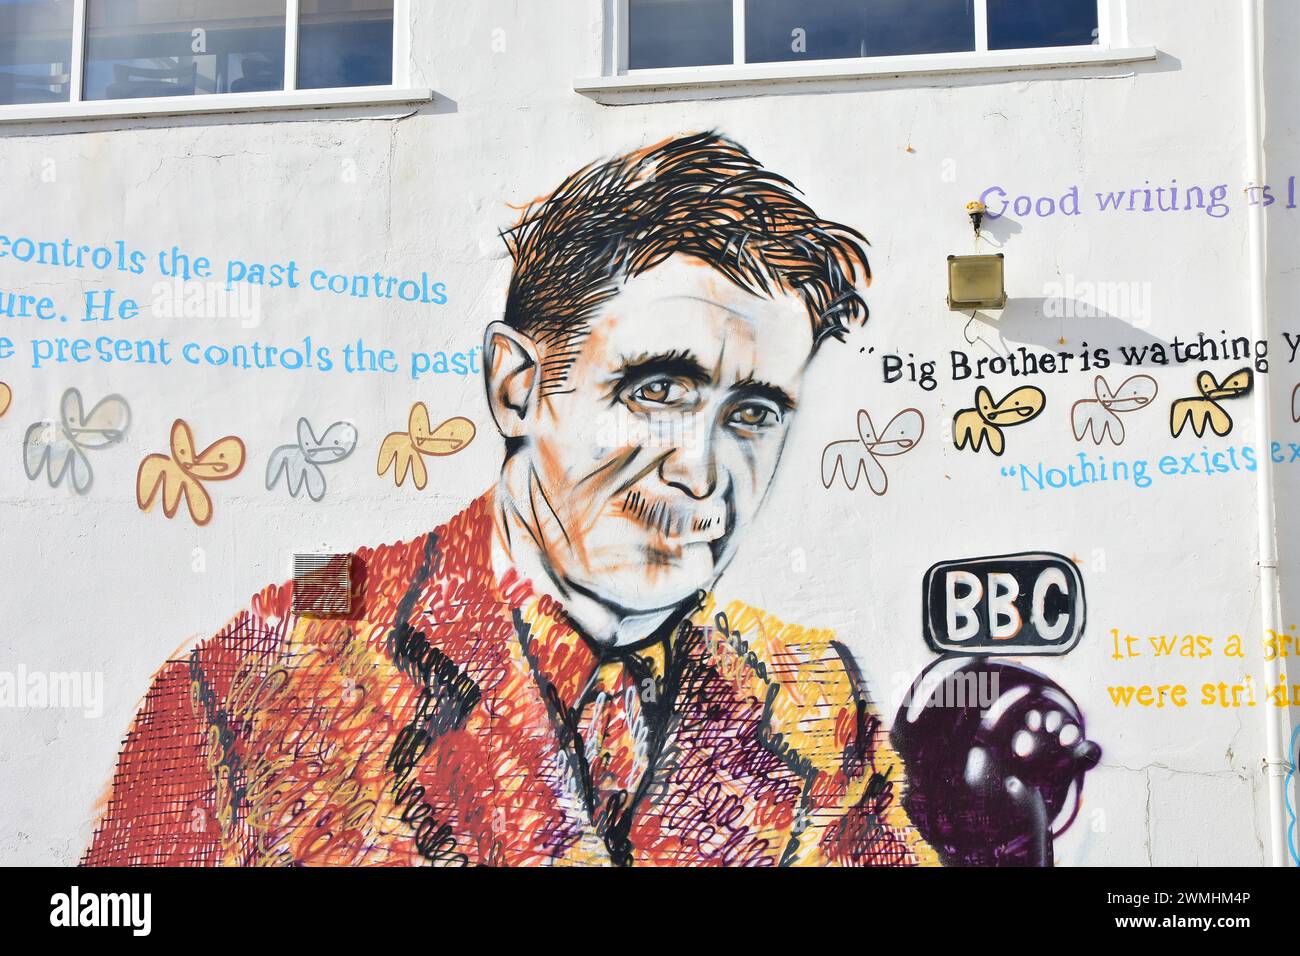 George Orwell bei BBC Mural, Southwold Pier, Suffolk, England, Großbritannien mit Zitaten aus Classic Books 1984 und Animal Farm Stockfoto